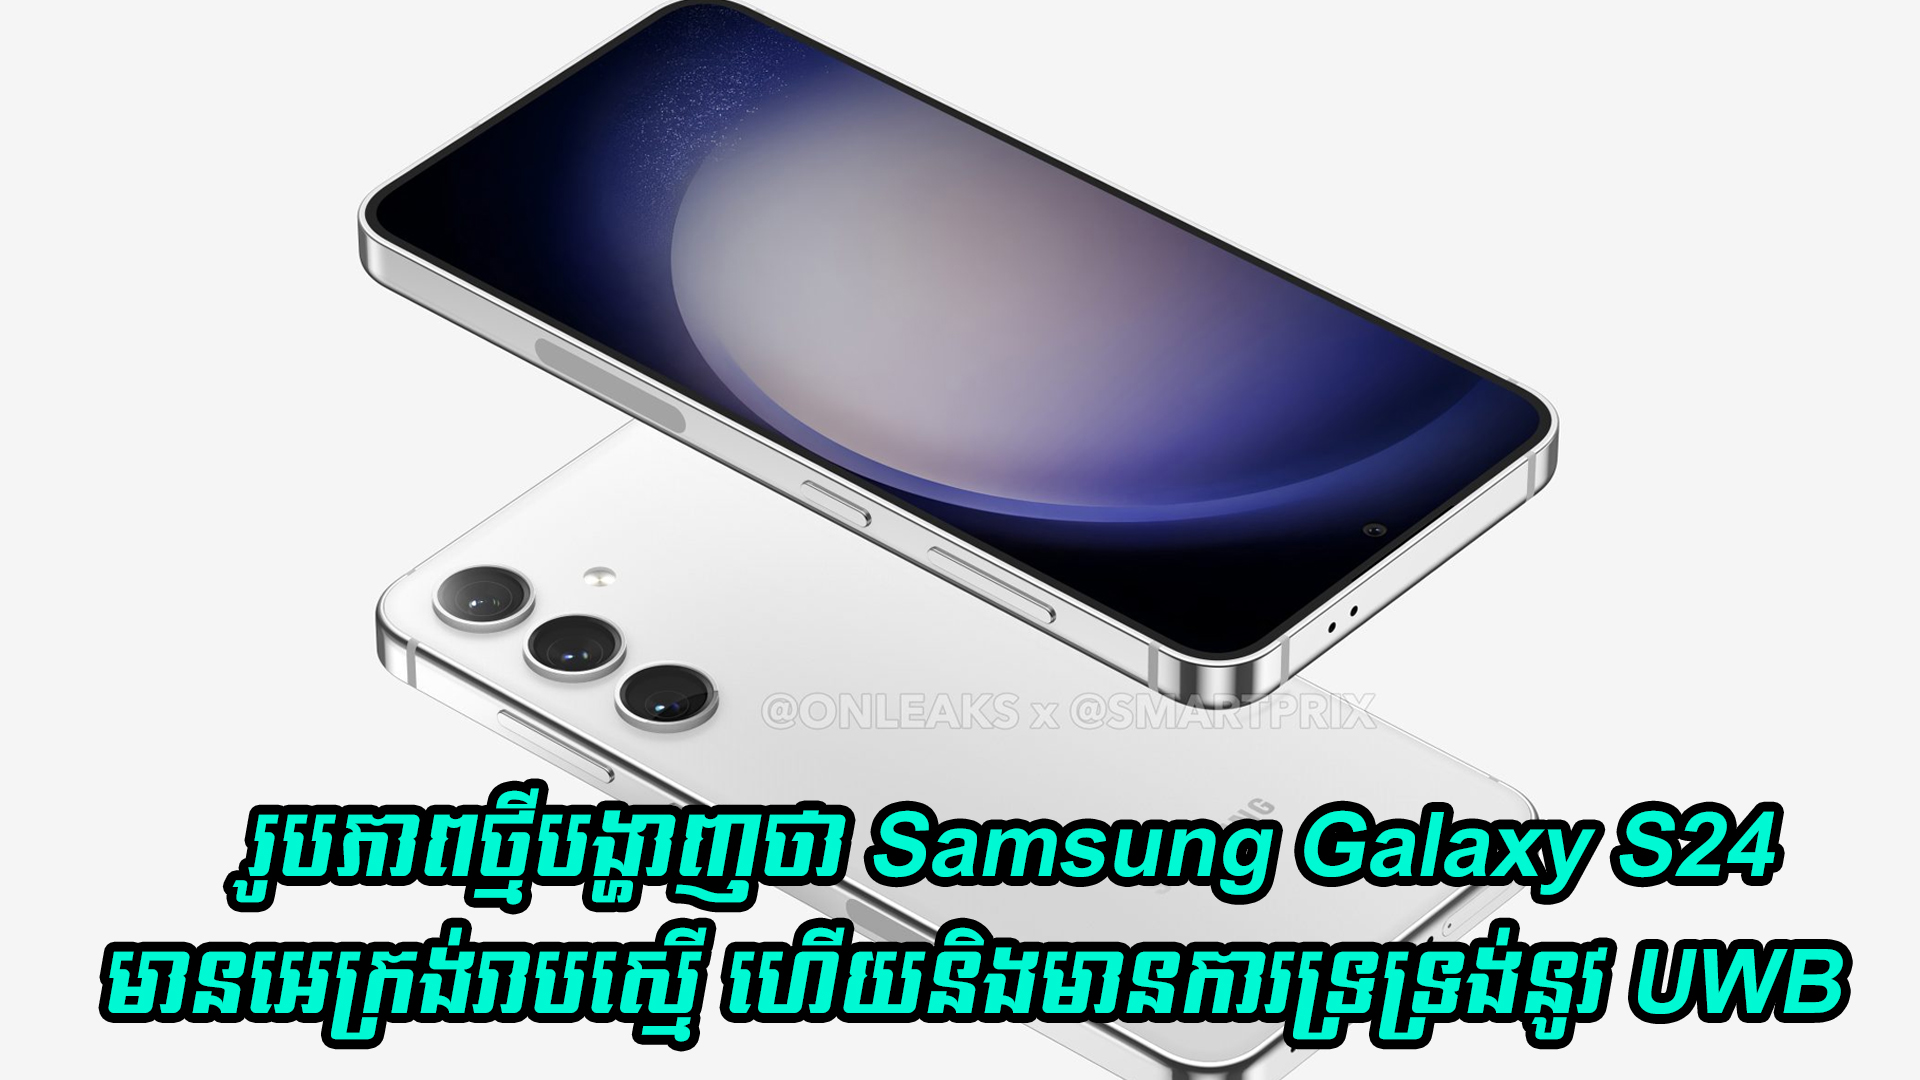 រូបភាពថ្មីបង្ហាញថា Samsung Galaxy S24 មានអេក្រង់រាបស្មើ ហើយនិងមានការទ្រទ្រង់នូវ UWB 